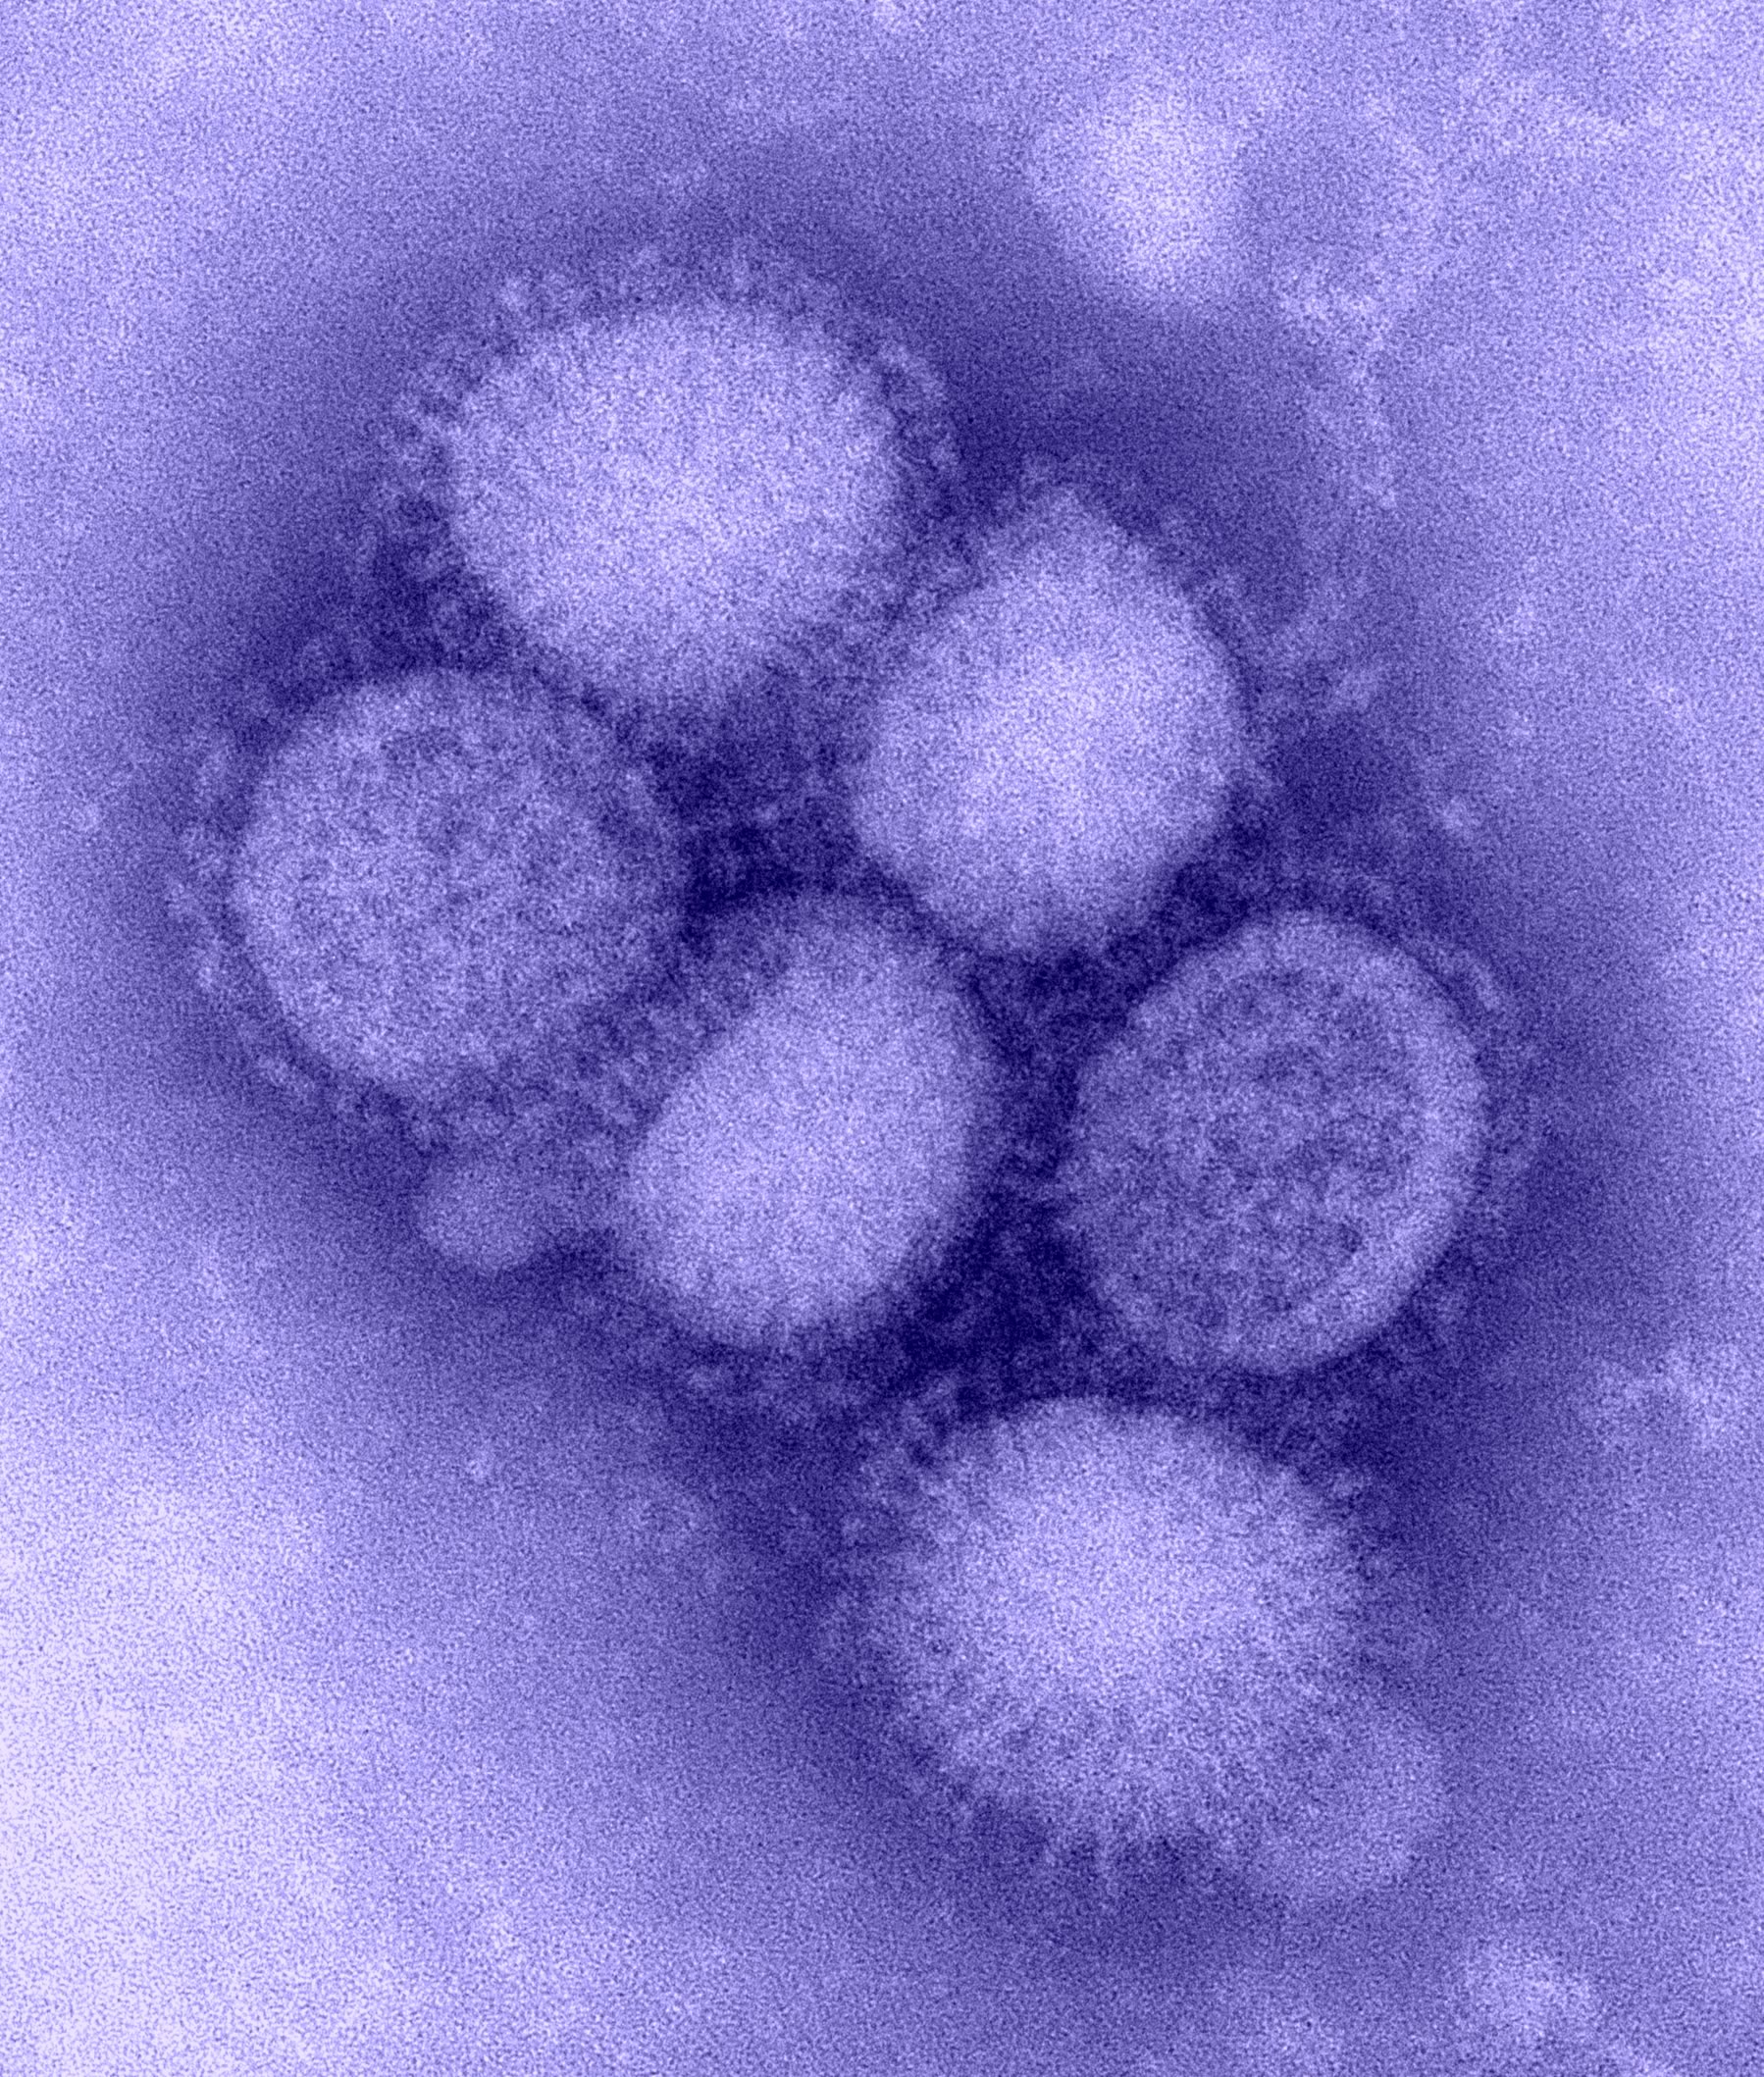 Seven People Tested Positive For H1n1 Flu Virus In Sabah